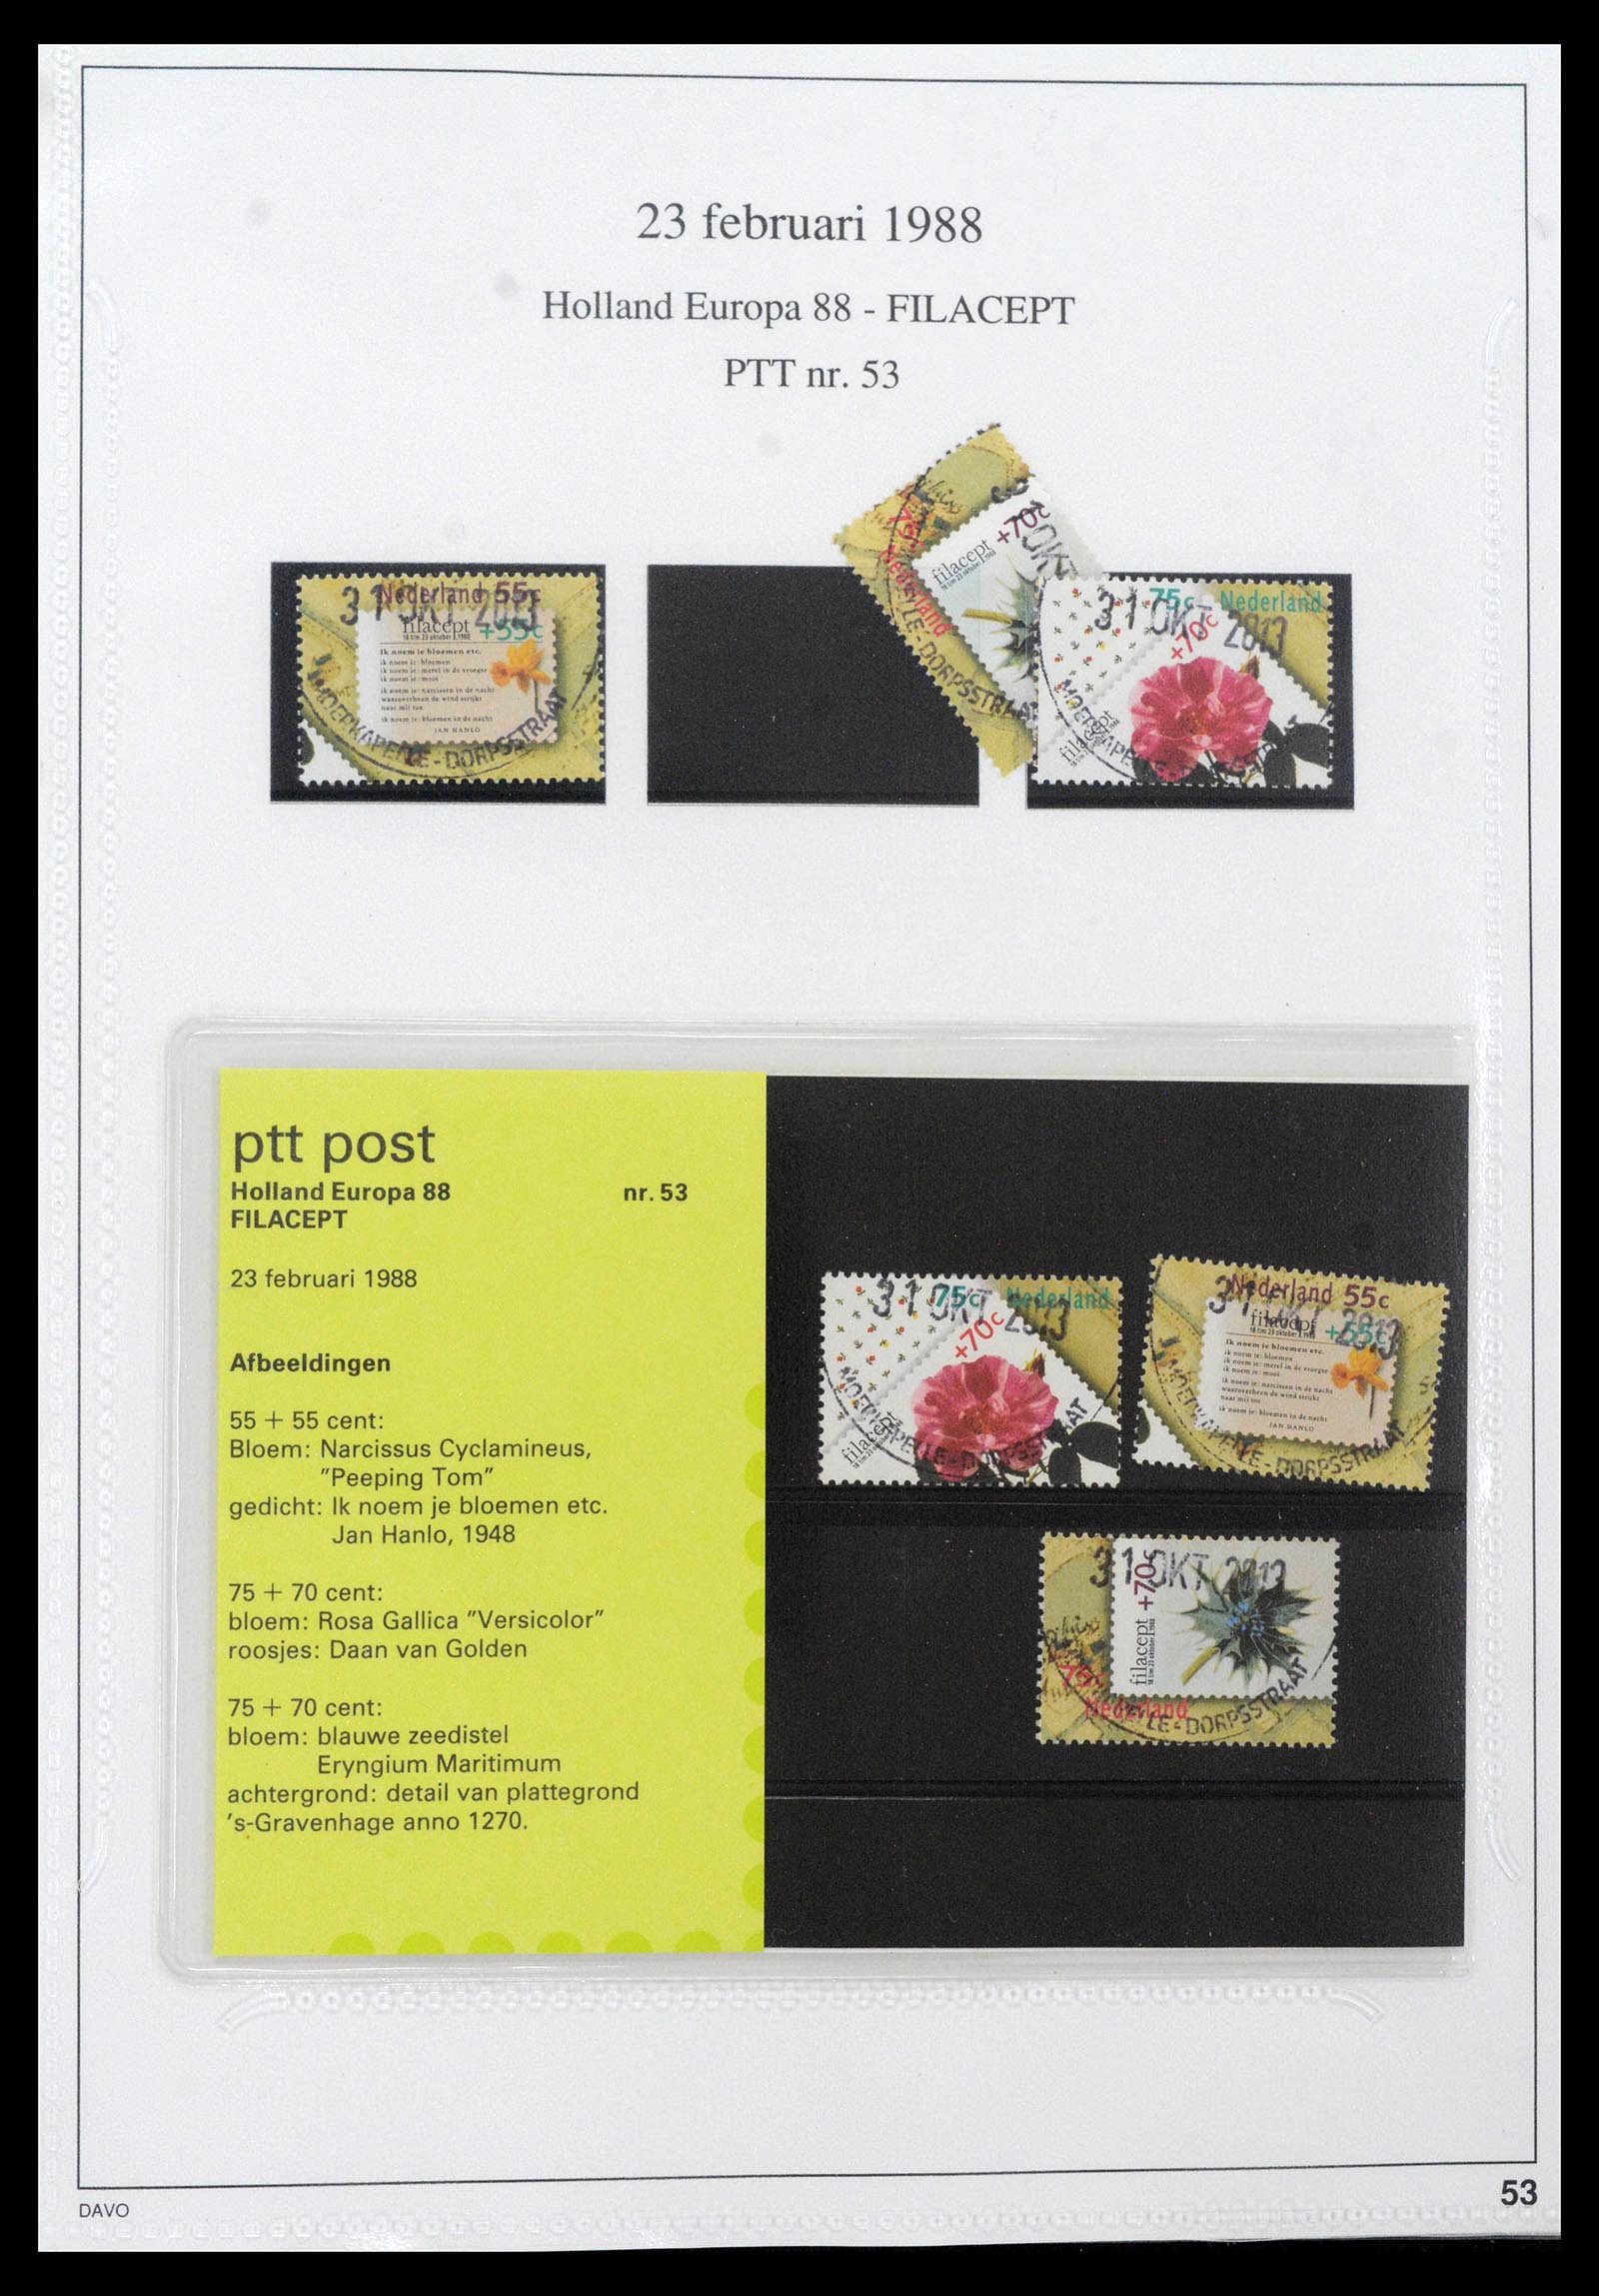 39121 0053 - Stamp collection 39121 Netherlands presentationpacks 1982-2001.